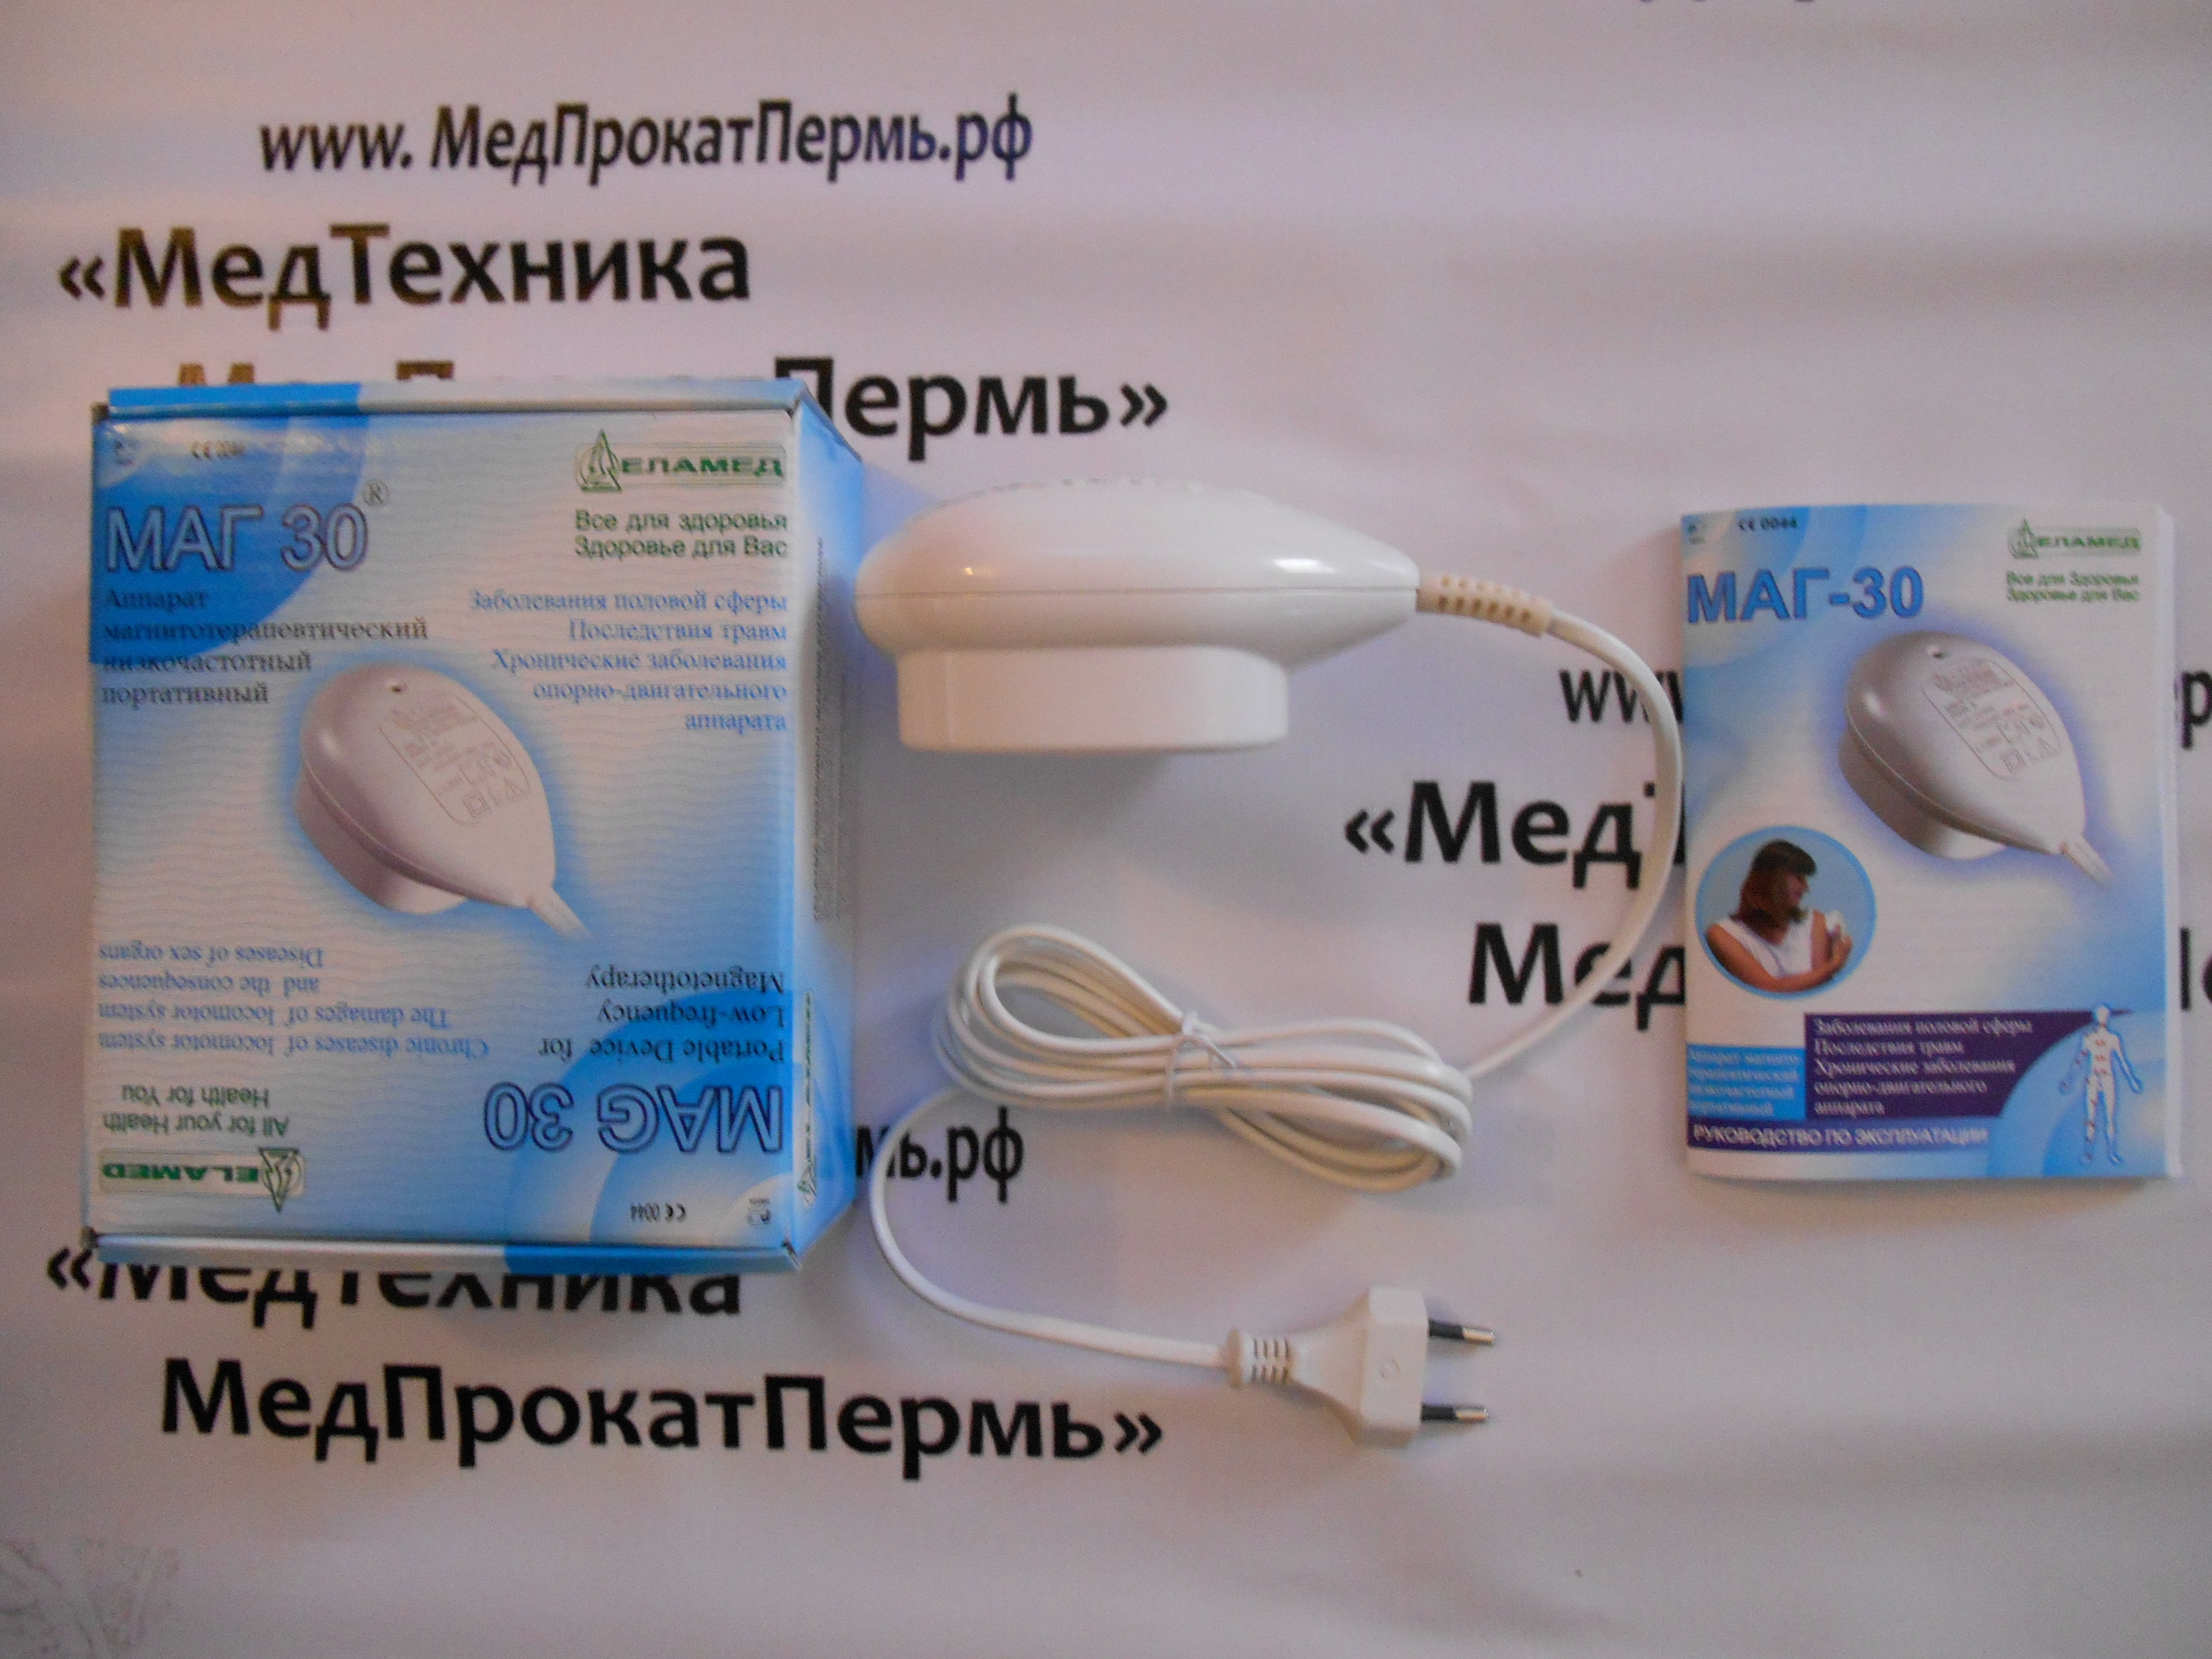 маг-30 прибор магнитотерапии инструкция по применению